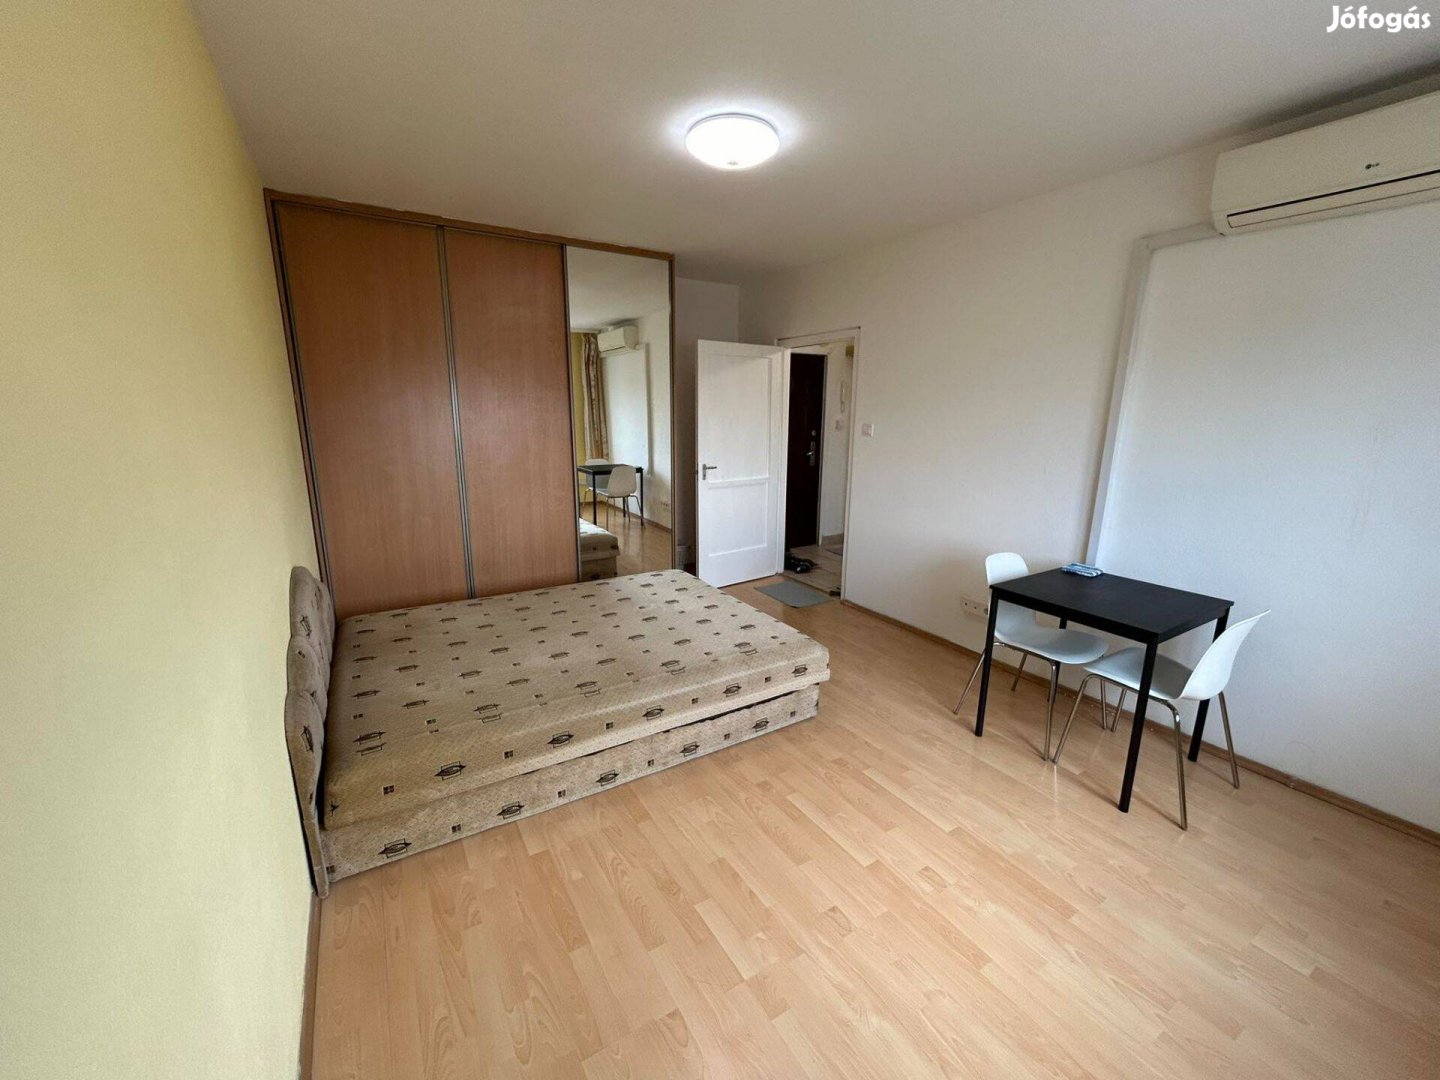 Felújított, 35 m2 (1,5 szoba) lakás Bp, Ecseri út metrómegállónál